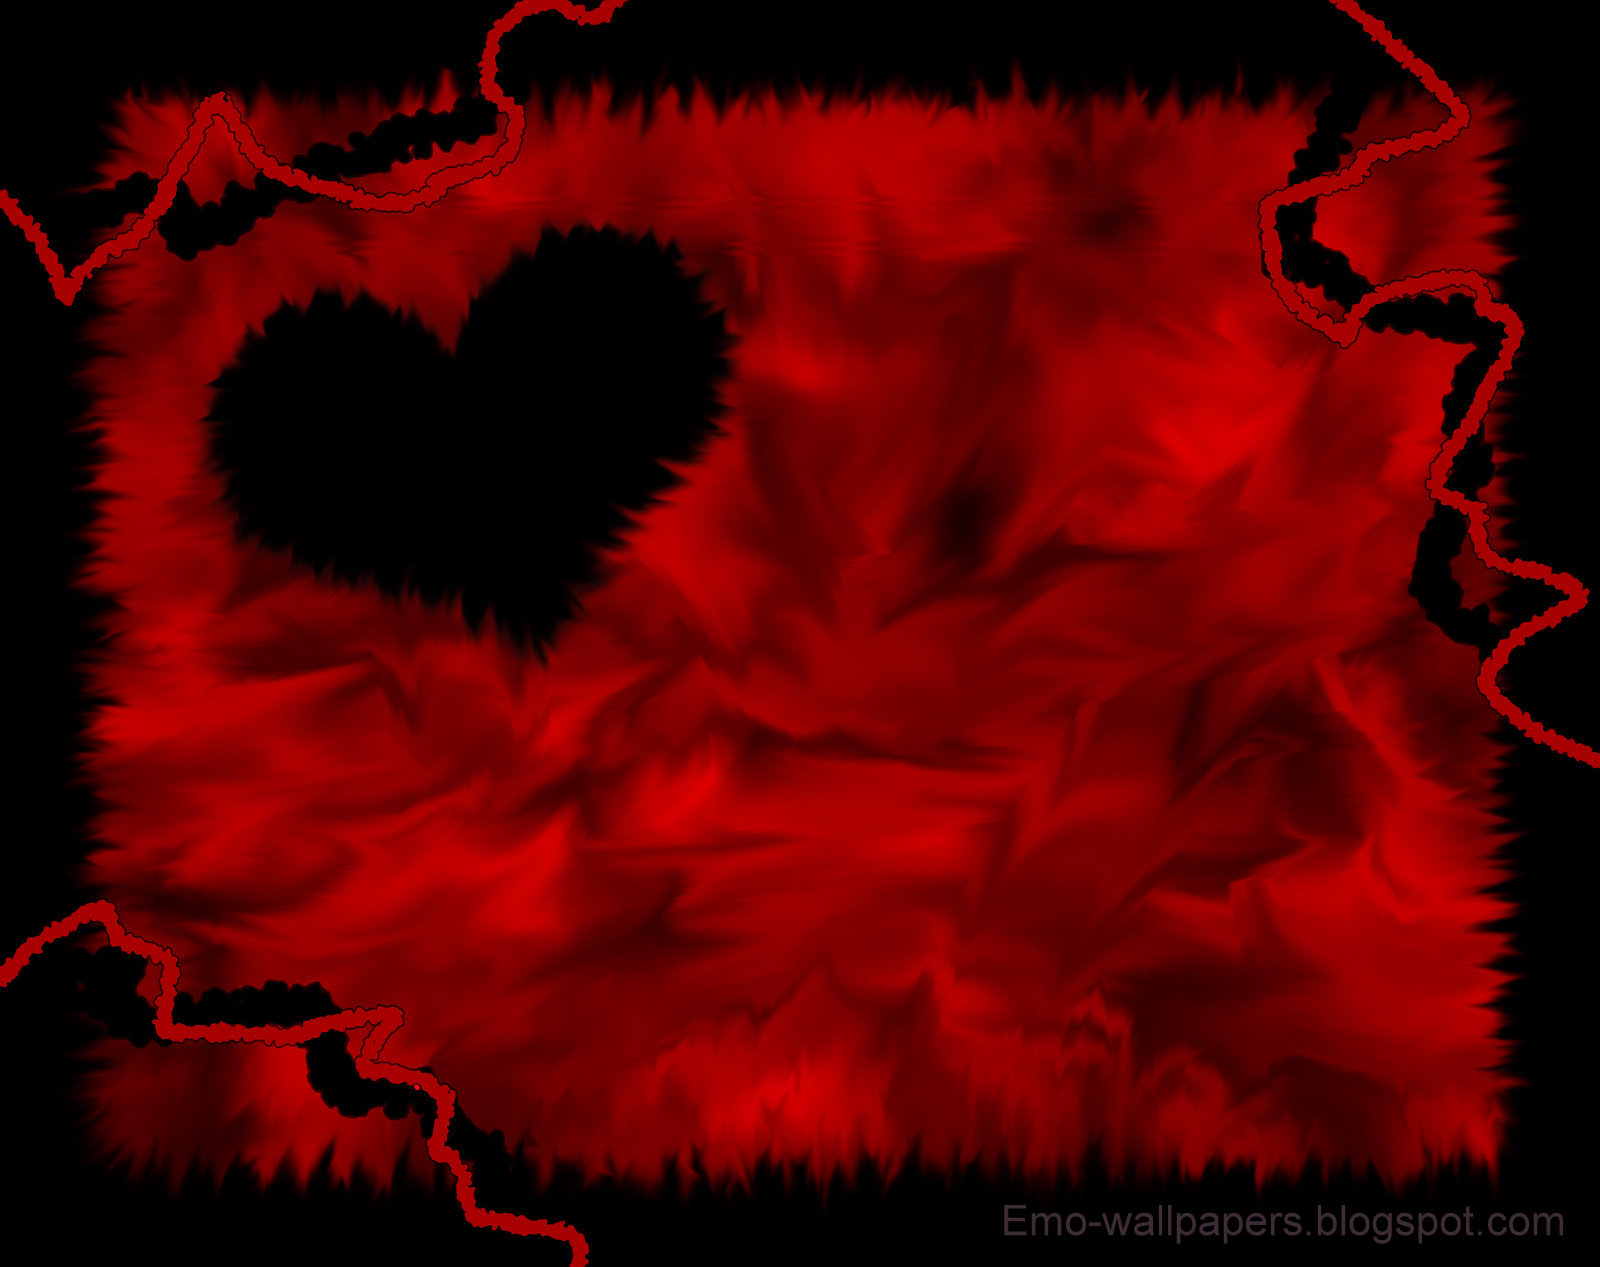 Tải về miễn phí Broken Heart Emo Wallpaper [1600x1267] cho máy tính của bạn với nền Emo đỏ sẽ thật sự đáng kinh ngạc và rực rỡ. Những hình ảnh đầy cảm xúc này sẽ khiến bạn cảm thấy thật sự bị đánh bay hoàn toàn tất cả mọi áp lực. Hãy tải ngay và khám phá thế giới Emo đỏ này!